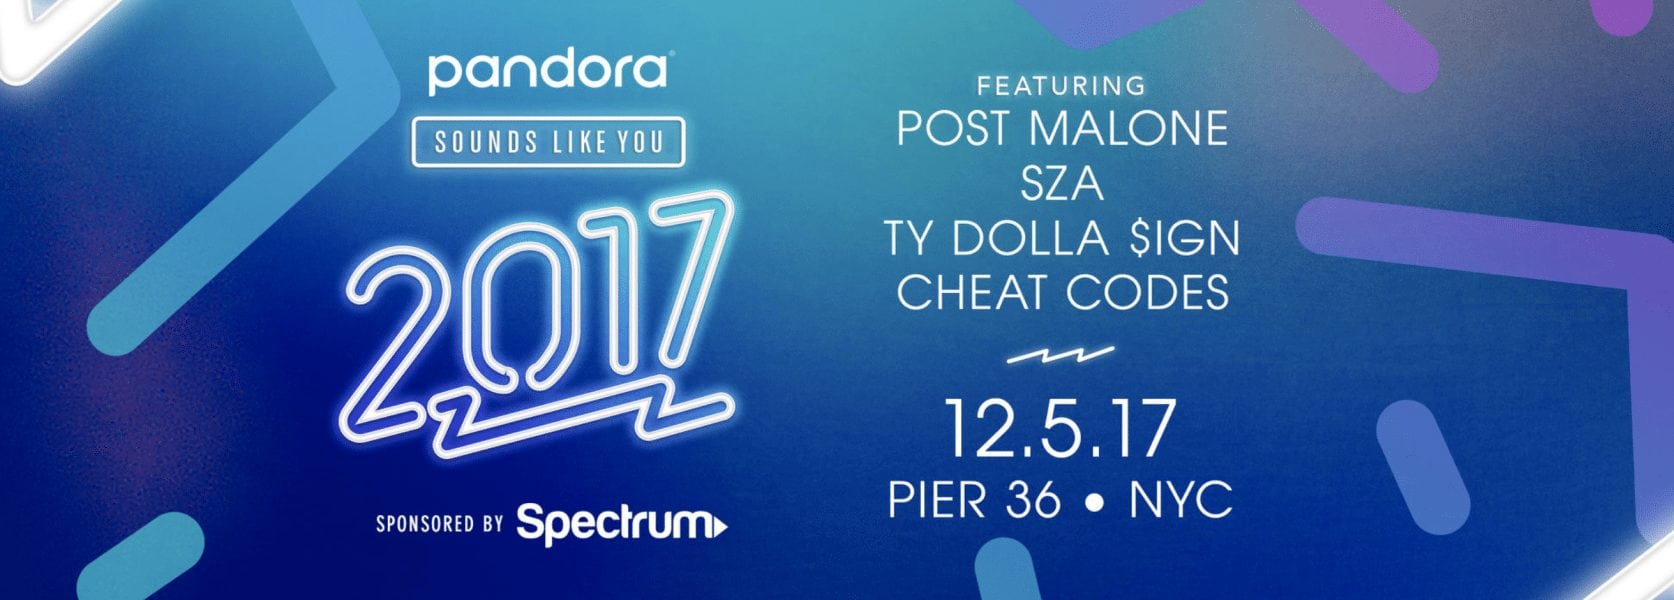 Pandora Sounds Like You 2017